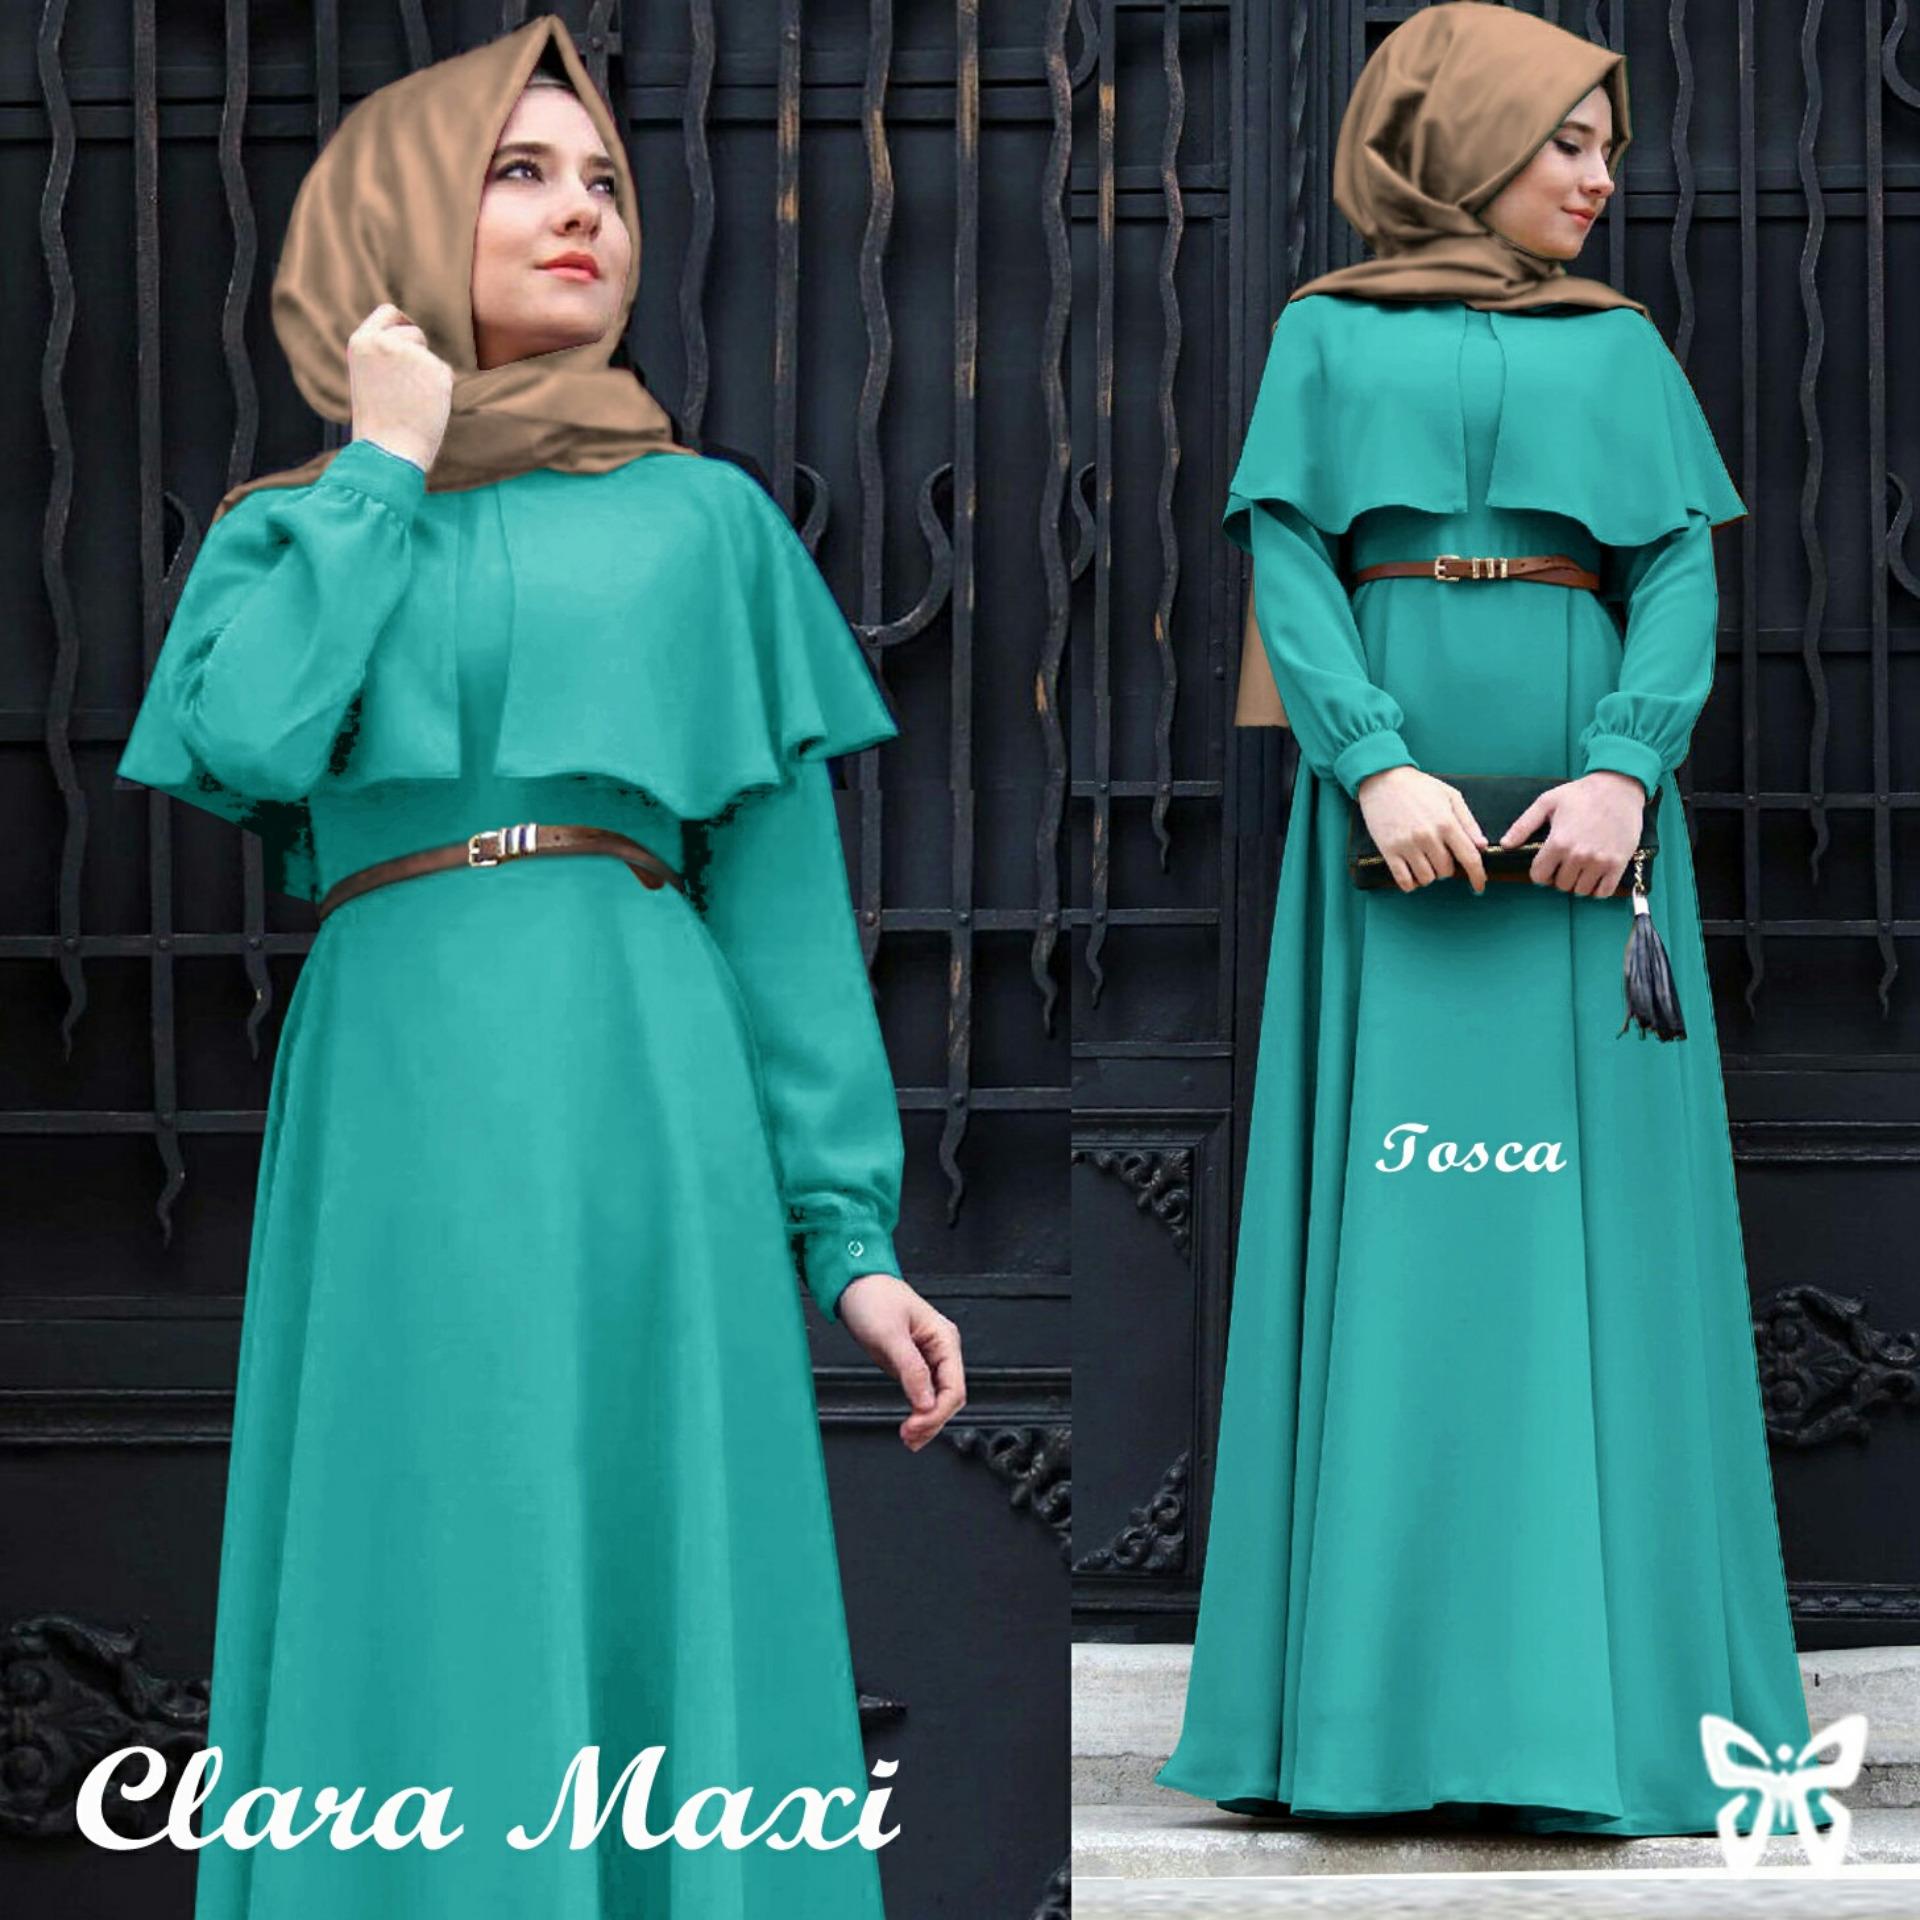 UC [Best Seller] Baju Maxi Dress GAMIS Kirana / Hijab Muslim / Muslim Syari Syar'i Hijab Clara / Busana Muslimah / Kebaya Modern (Aracl)  SS - Tosca - A0008 D2C